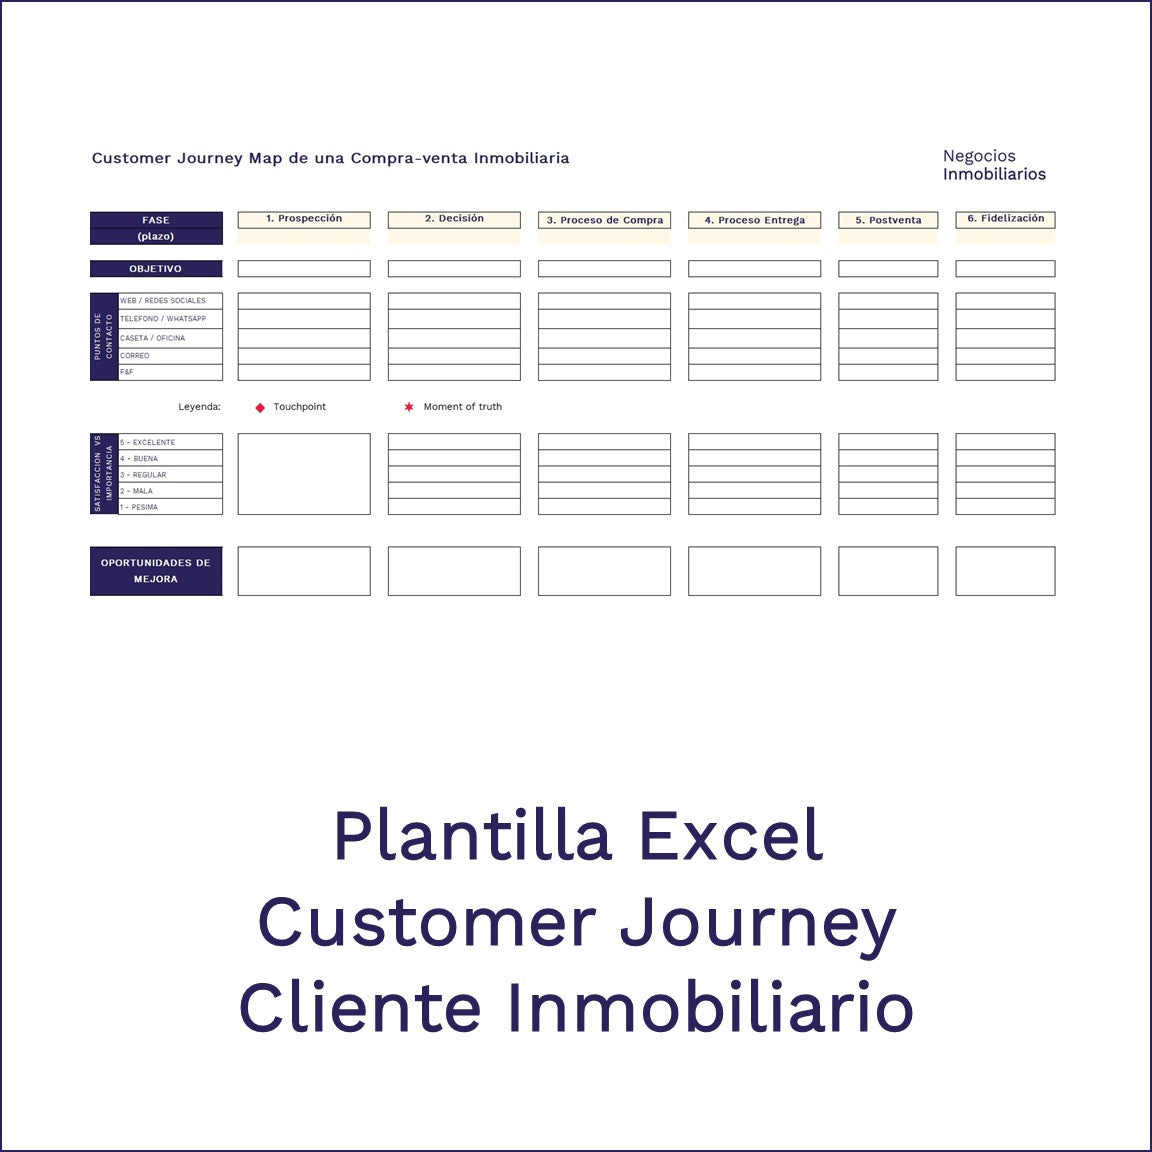 Plantilla Base - Customer Journey cliente inmobiliario